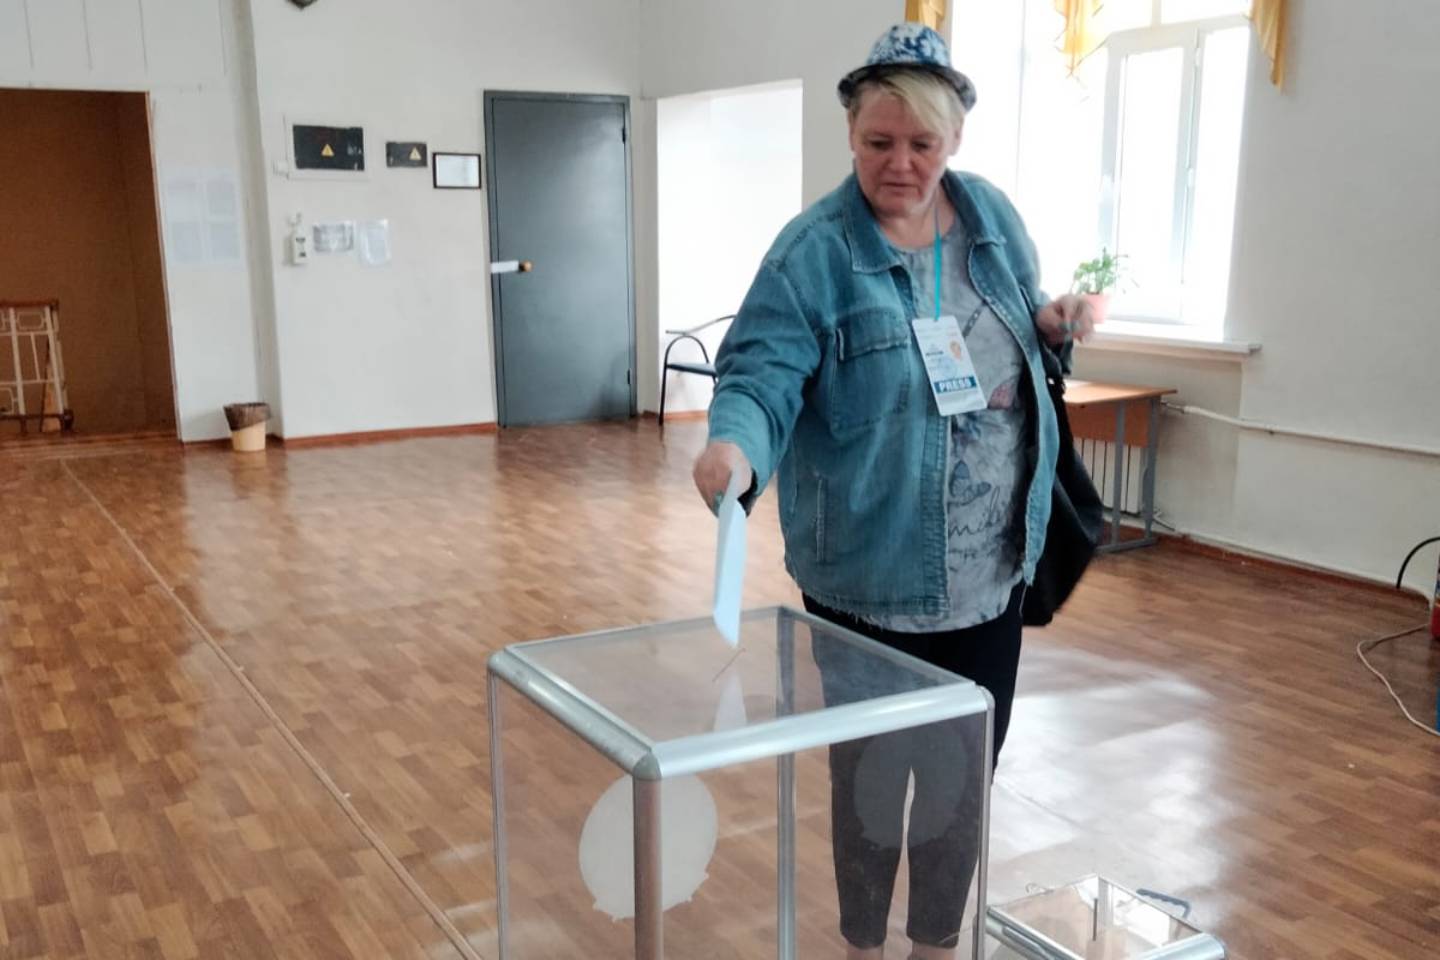 Усть-Каменогорск и ВКО / "Мы в ответе за свою страну!" - устькаменогорцы активно голосуют на референдуме